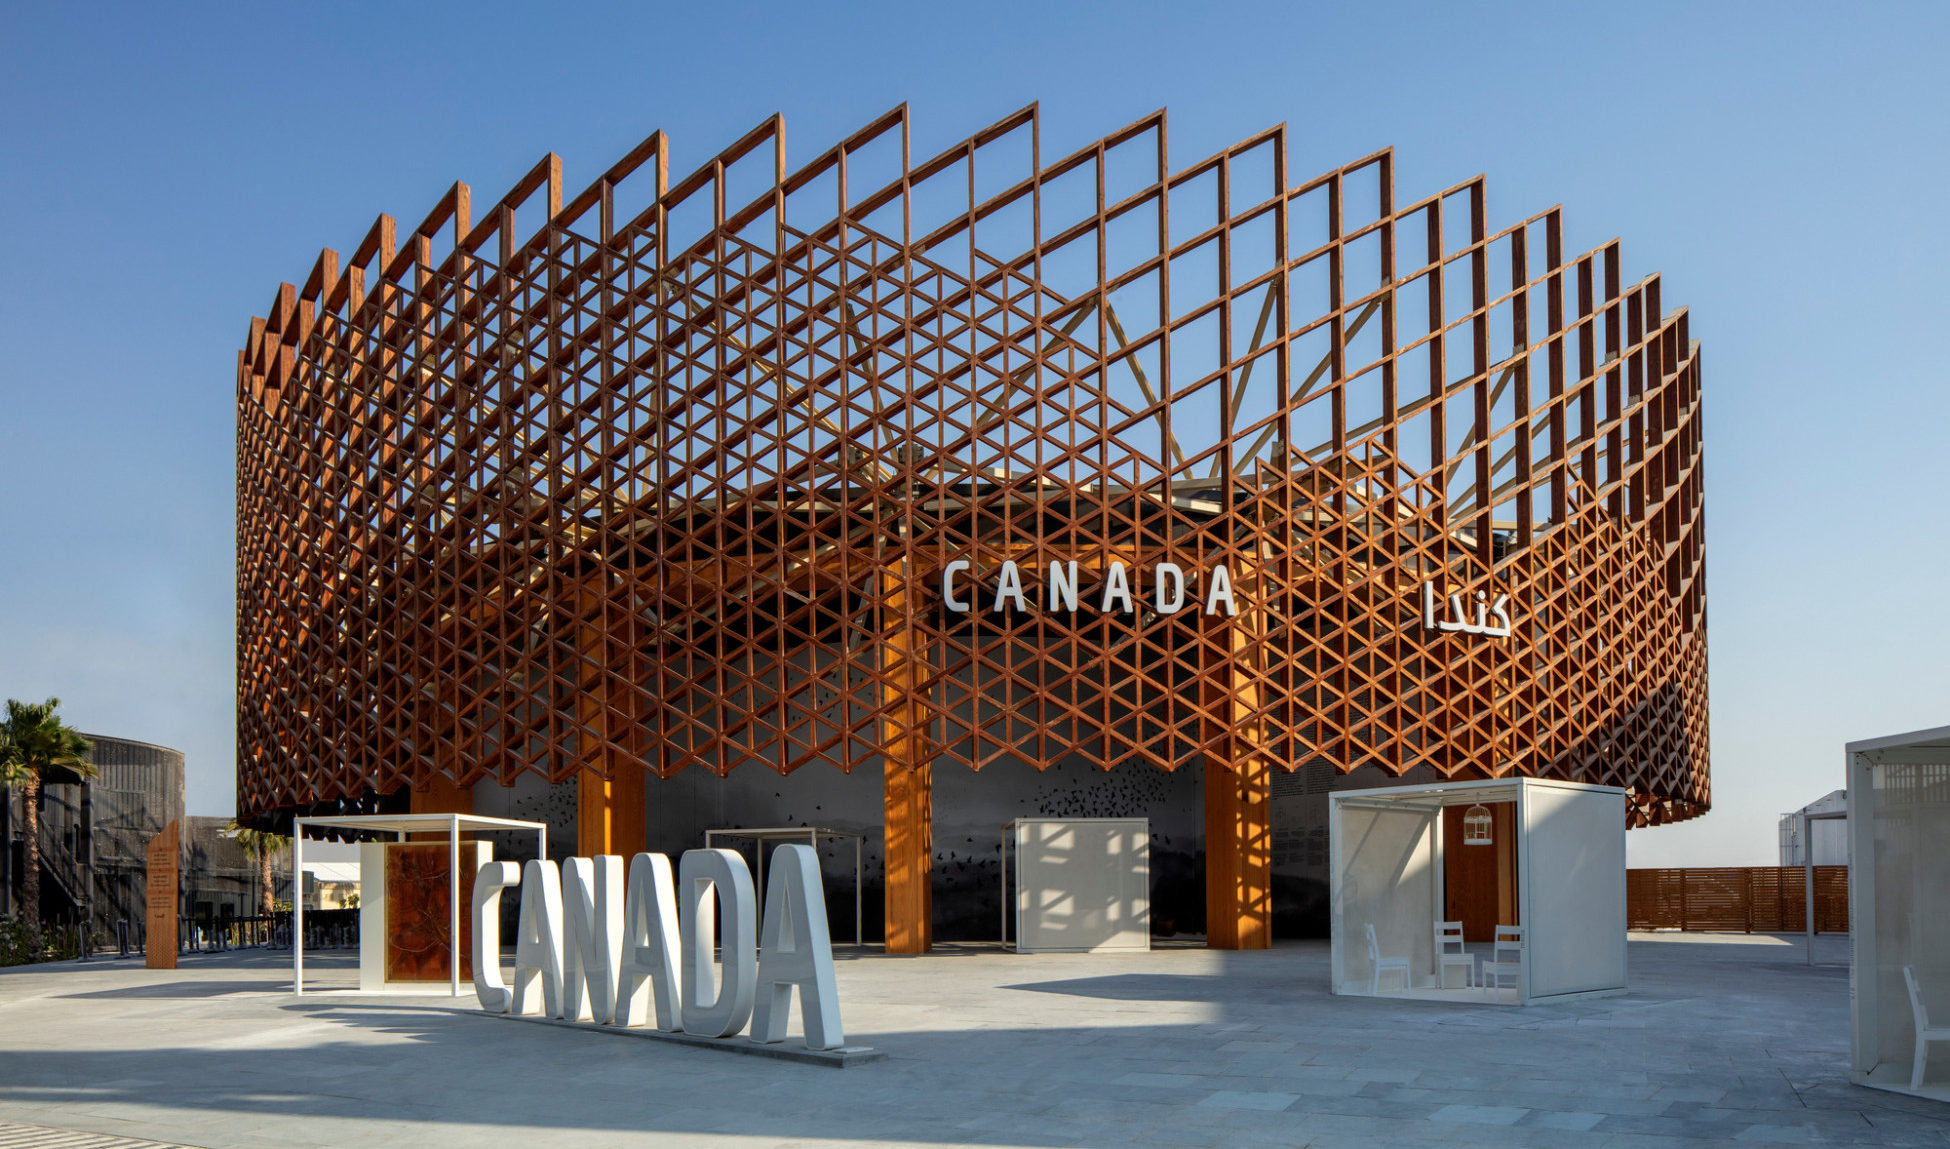 Canada Pavilion Unveiled at Expo 2020 Dubai